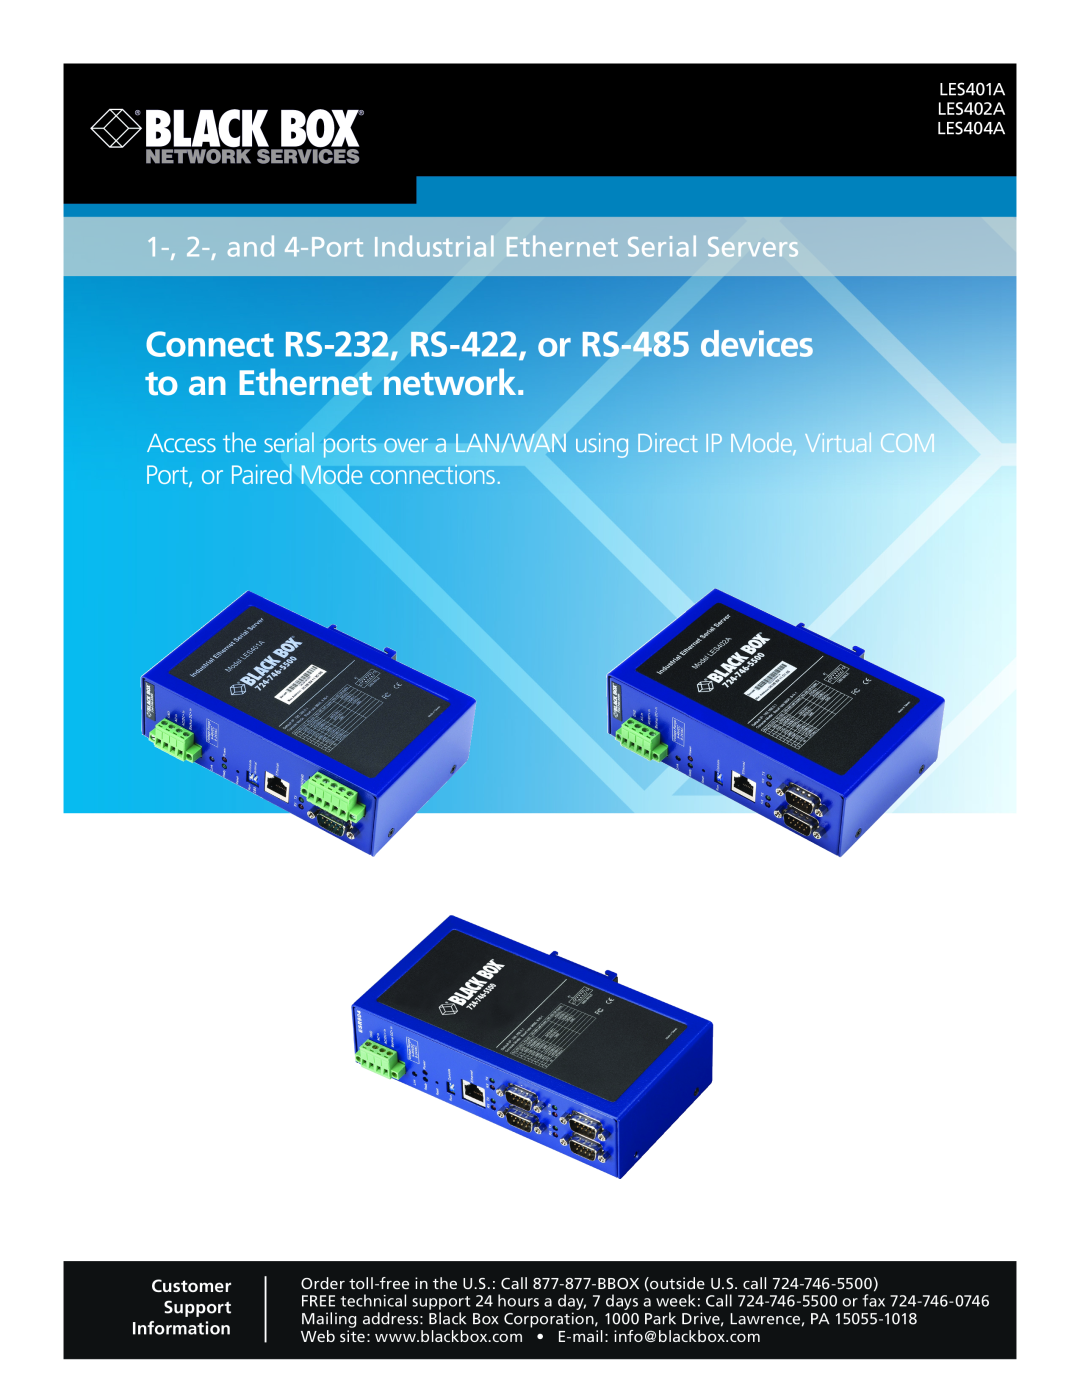 Black Box LES404A, LES402A, LES401A manual 1 of, Industrial Ethernet Serial Servers, 05/12/2010 #26589 